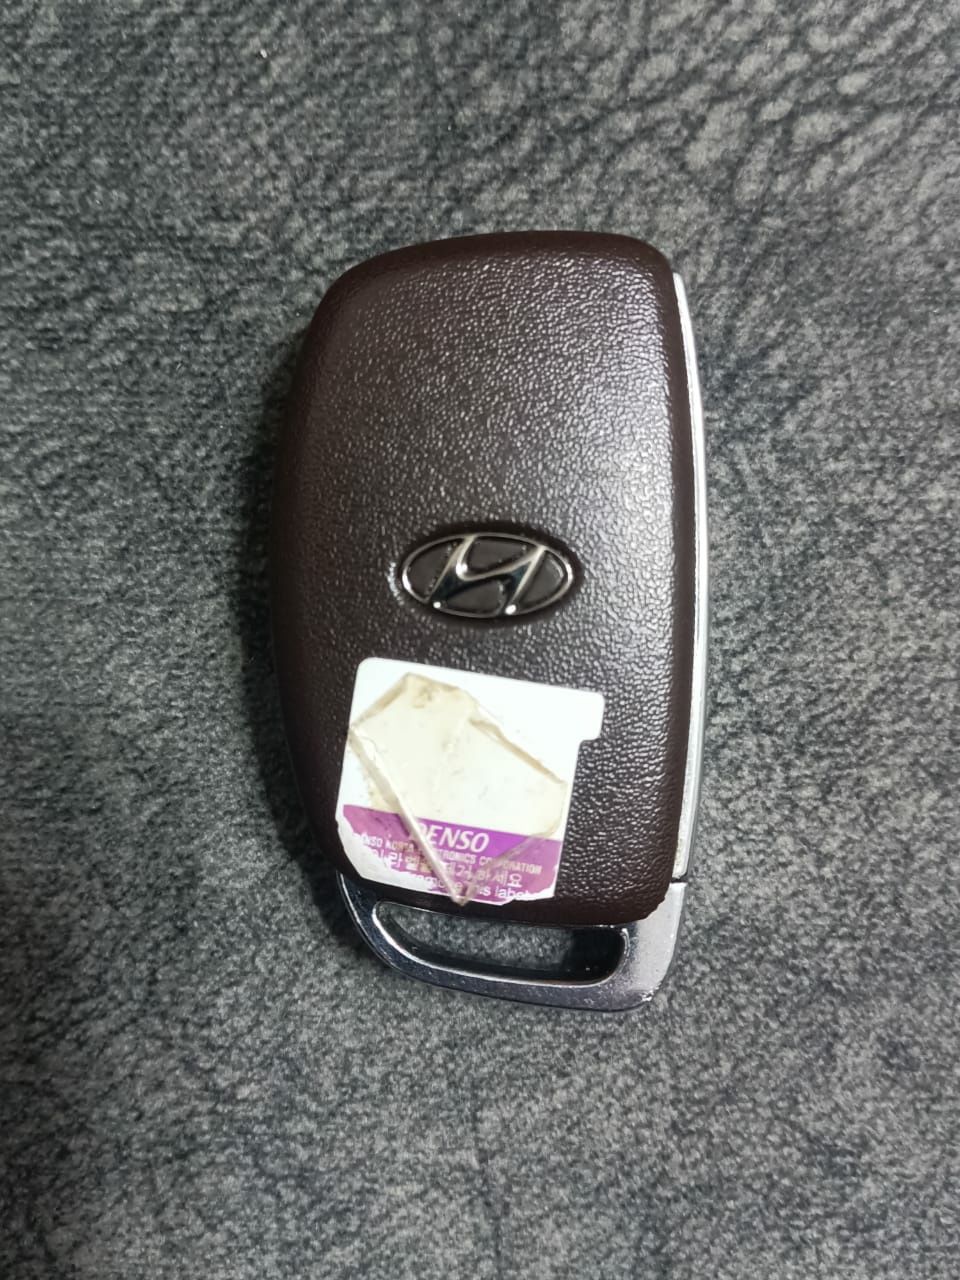 Автоключ на Hyundai.